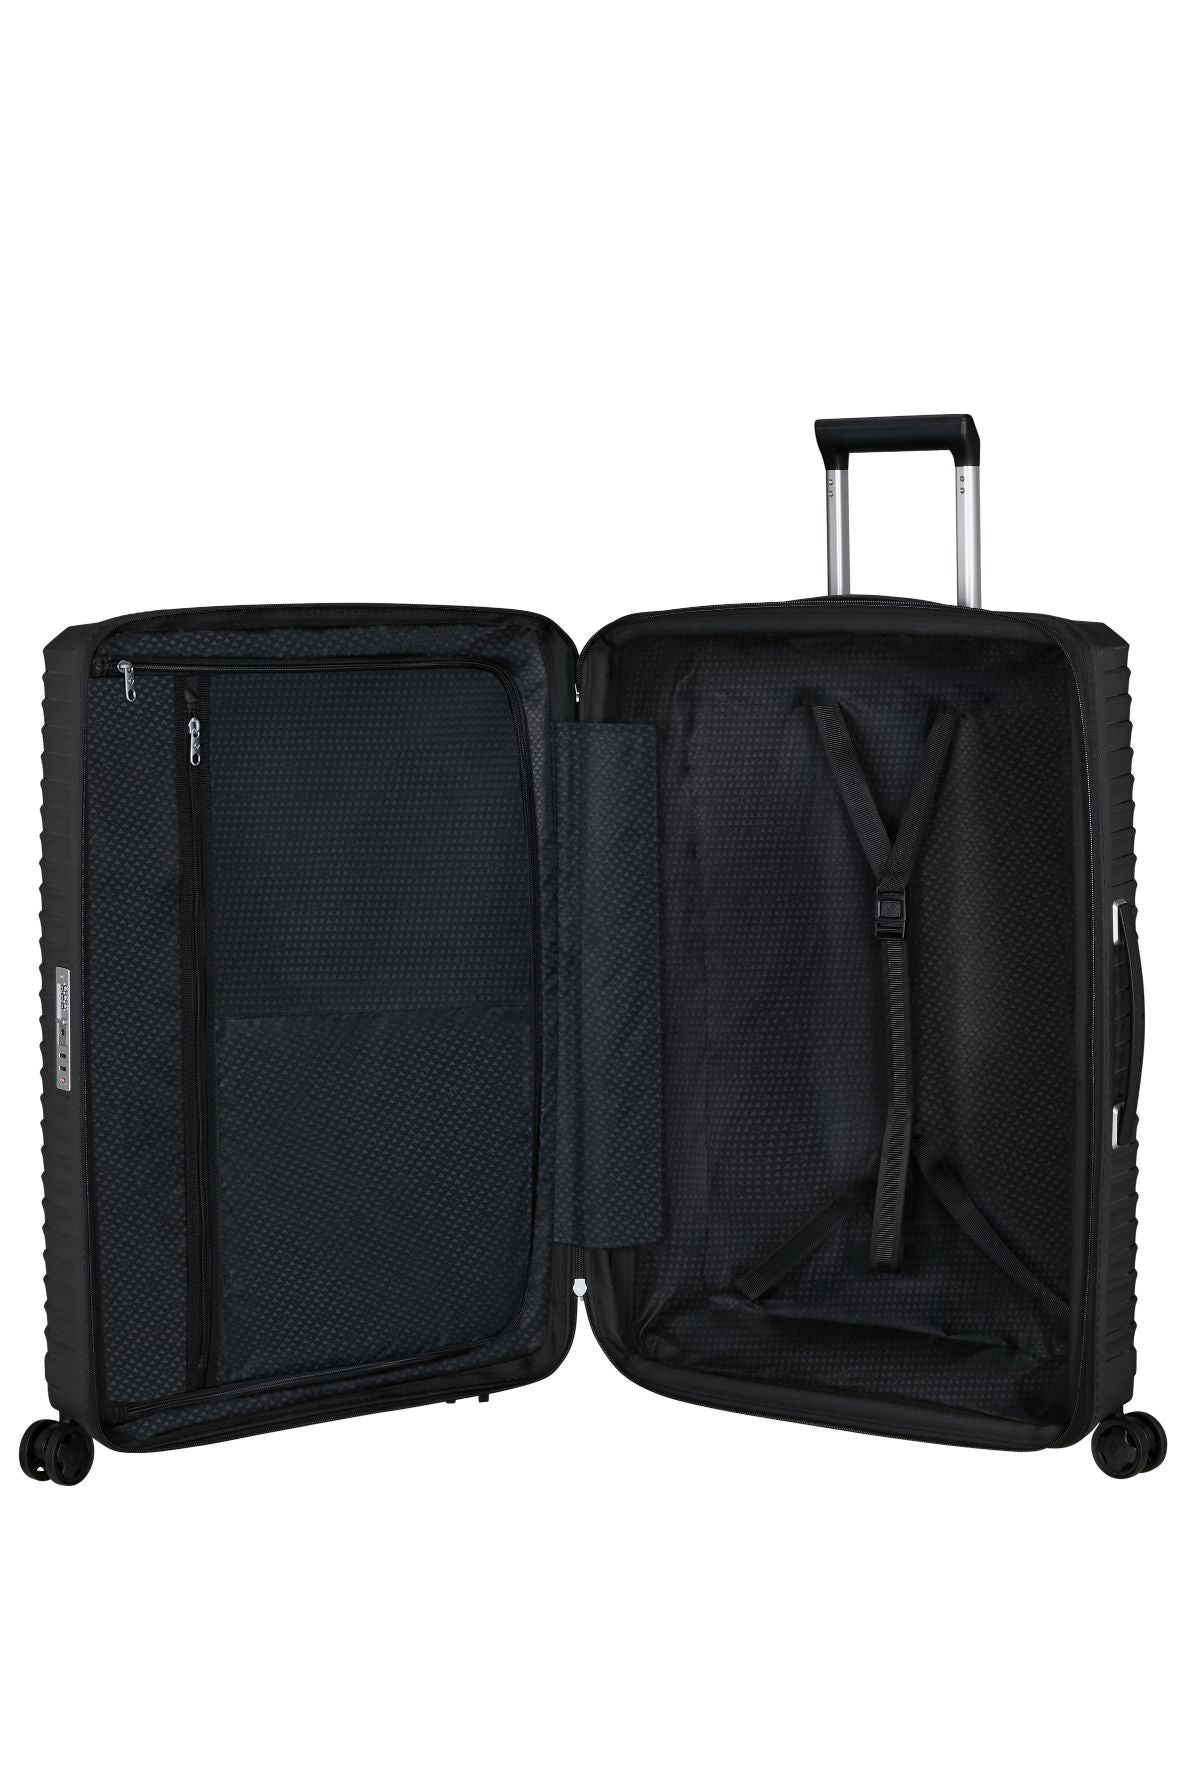 Samsonite - Upscape 81cm Large Suitcase - Black-5